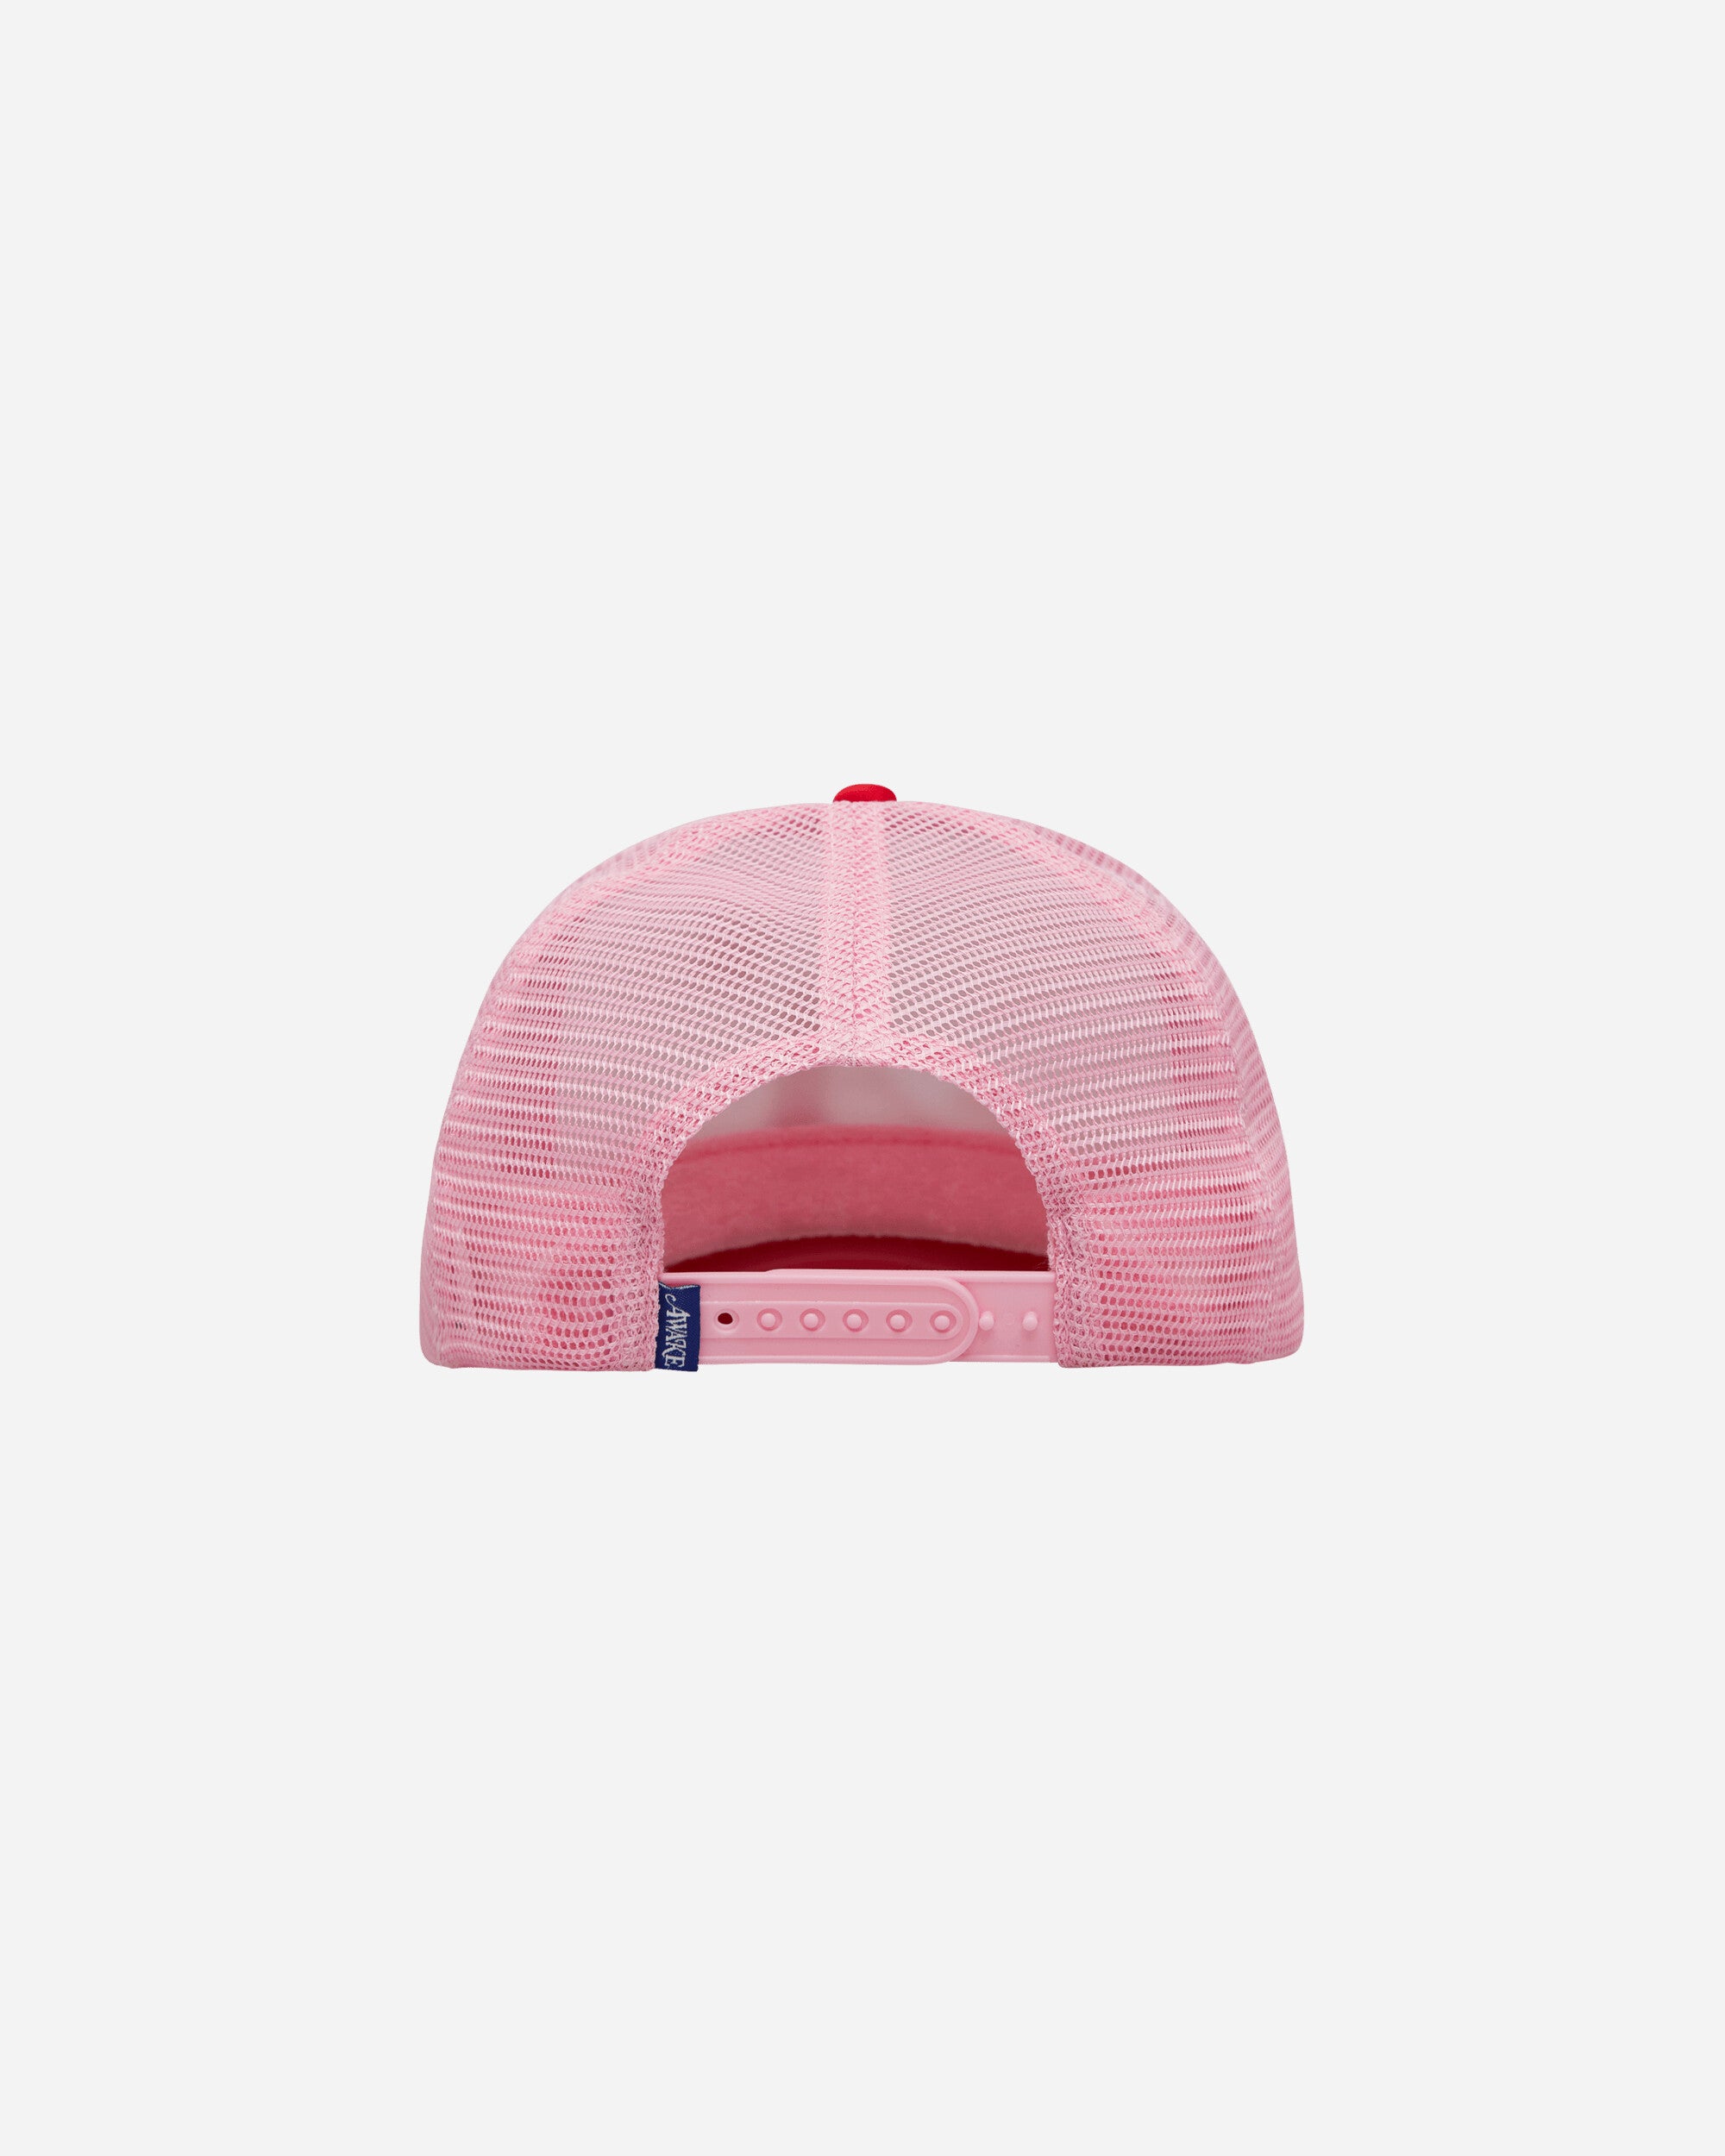 Awake NY A Trucker Hat Pink Hats Caps 9031842 PNK